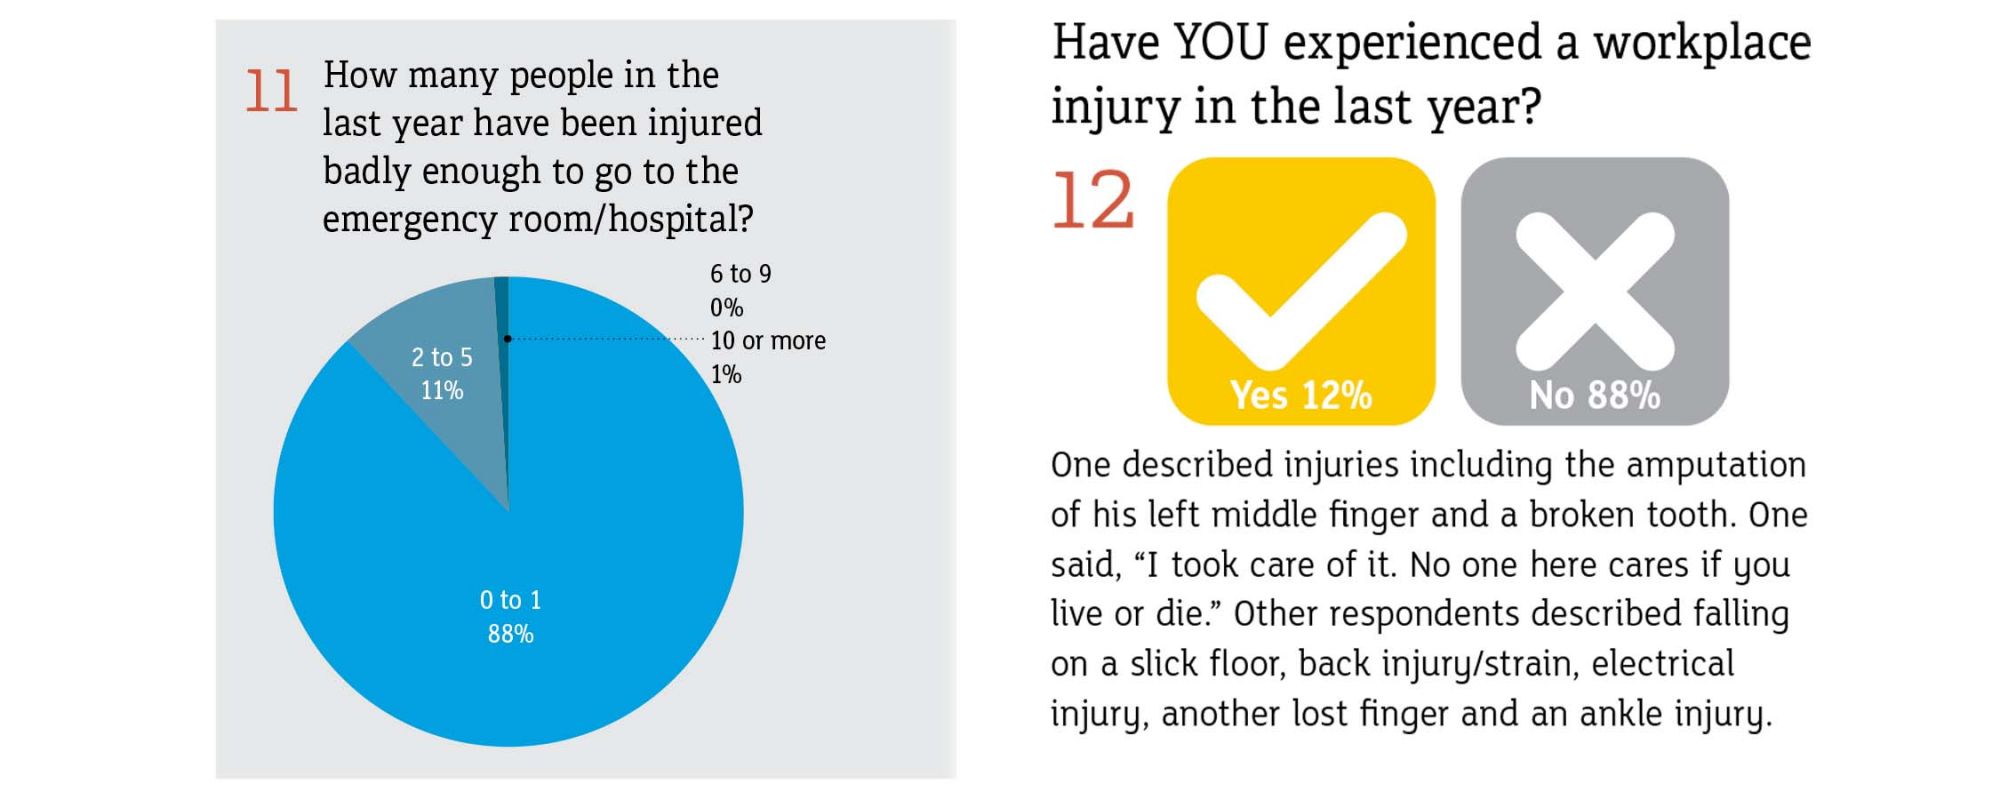 有多少人在去年受伤严重到足以去急诊室/医院吗?你在去年经历了工伤?